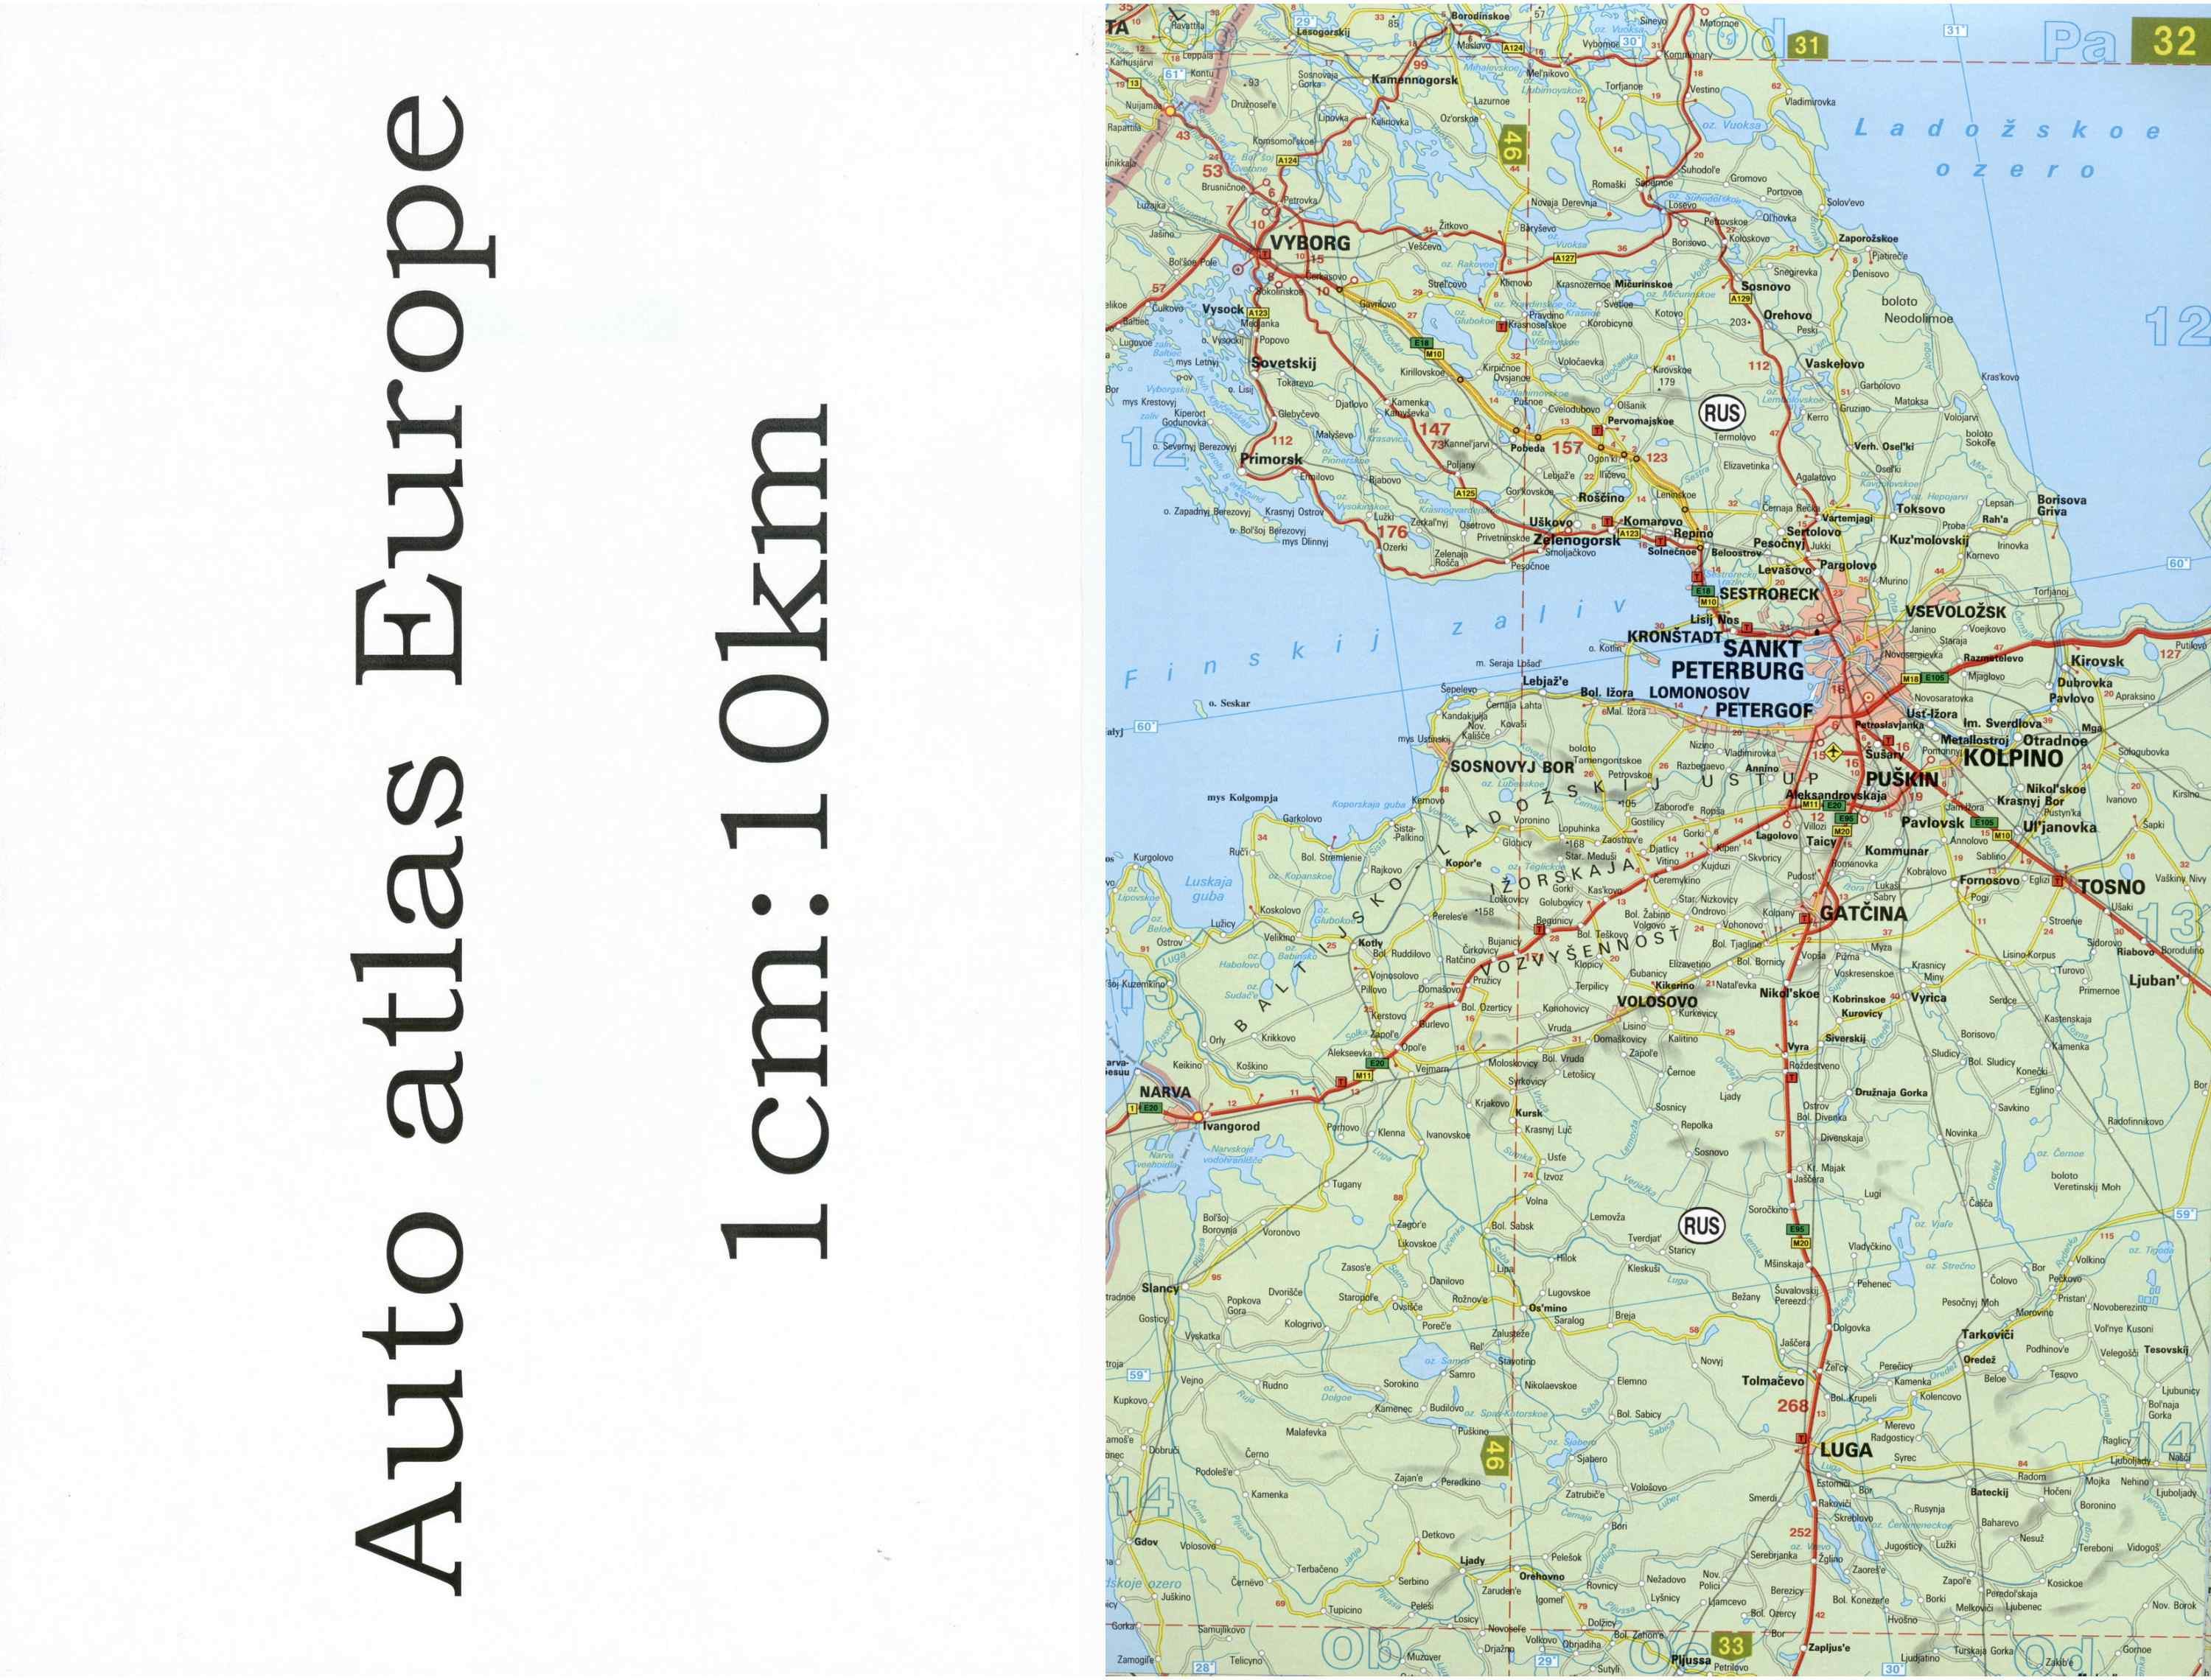 Автомобильная карта Европы. Атлас автомобильных дорог Европы на общей карте, I0 - 